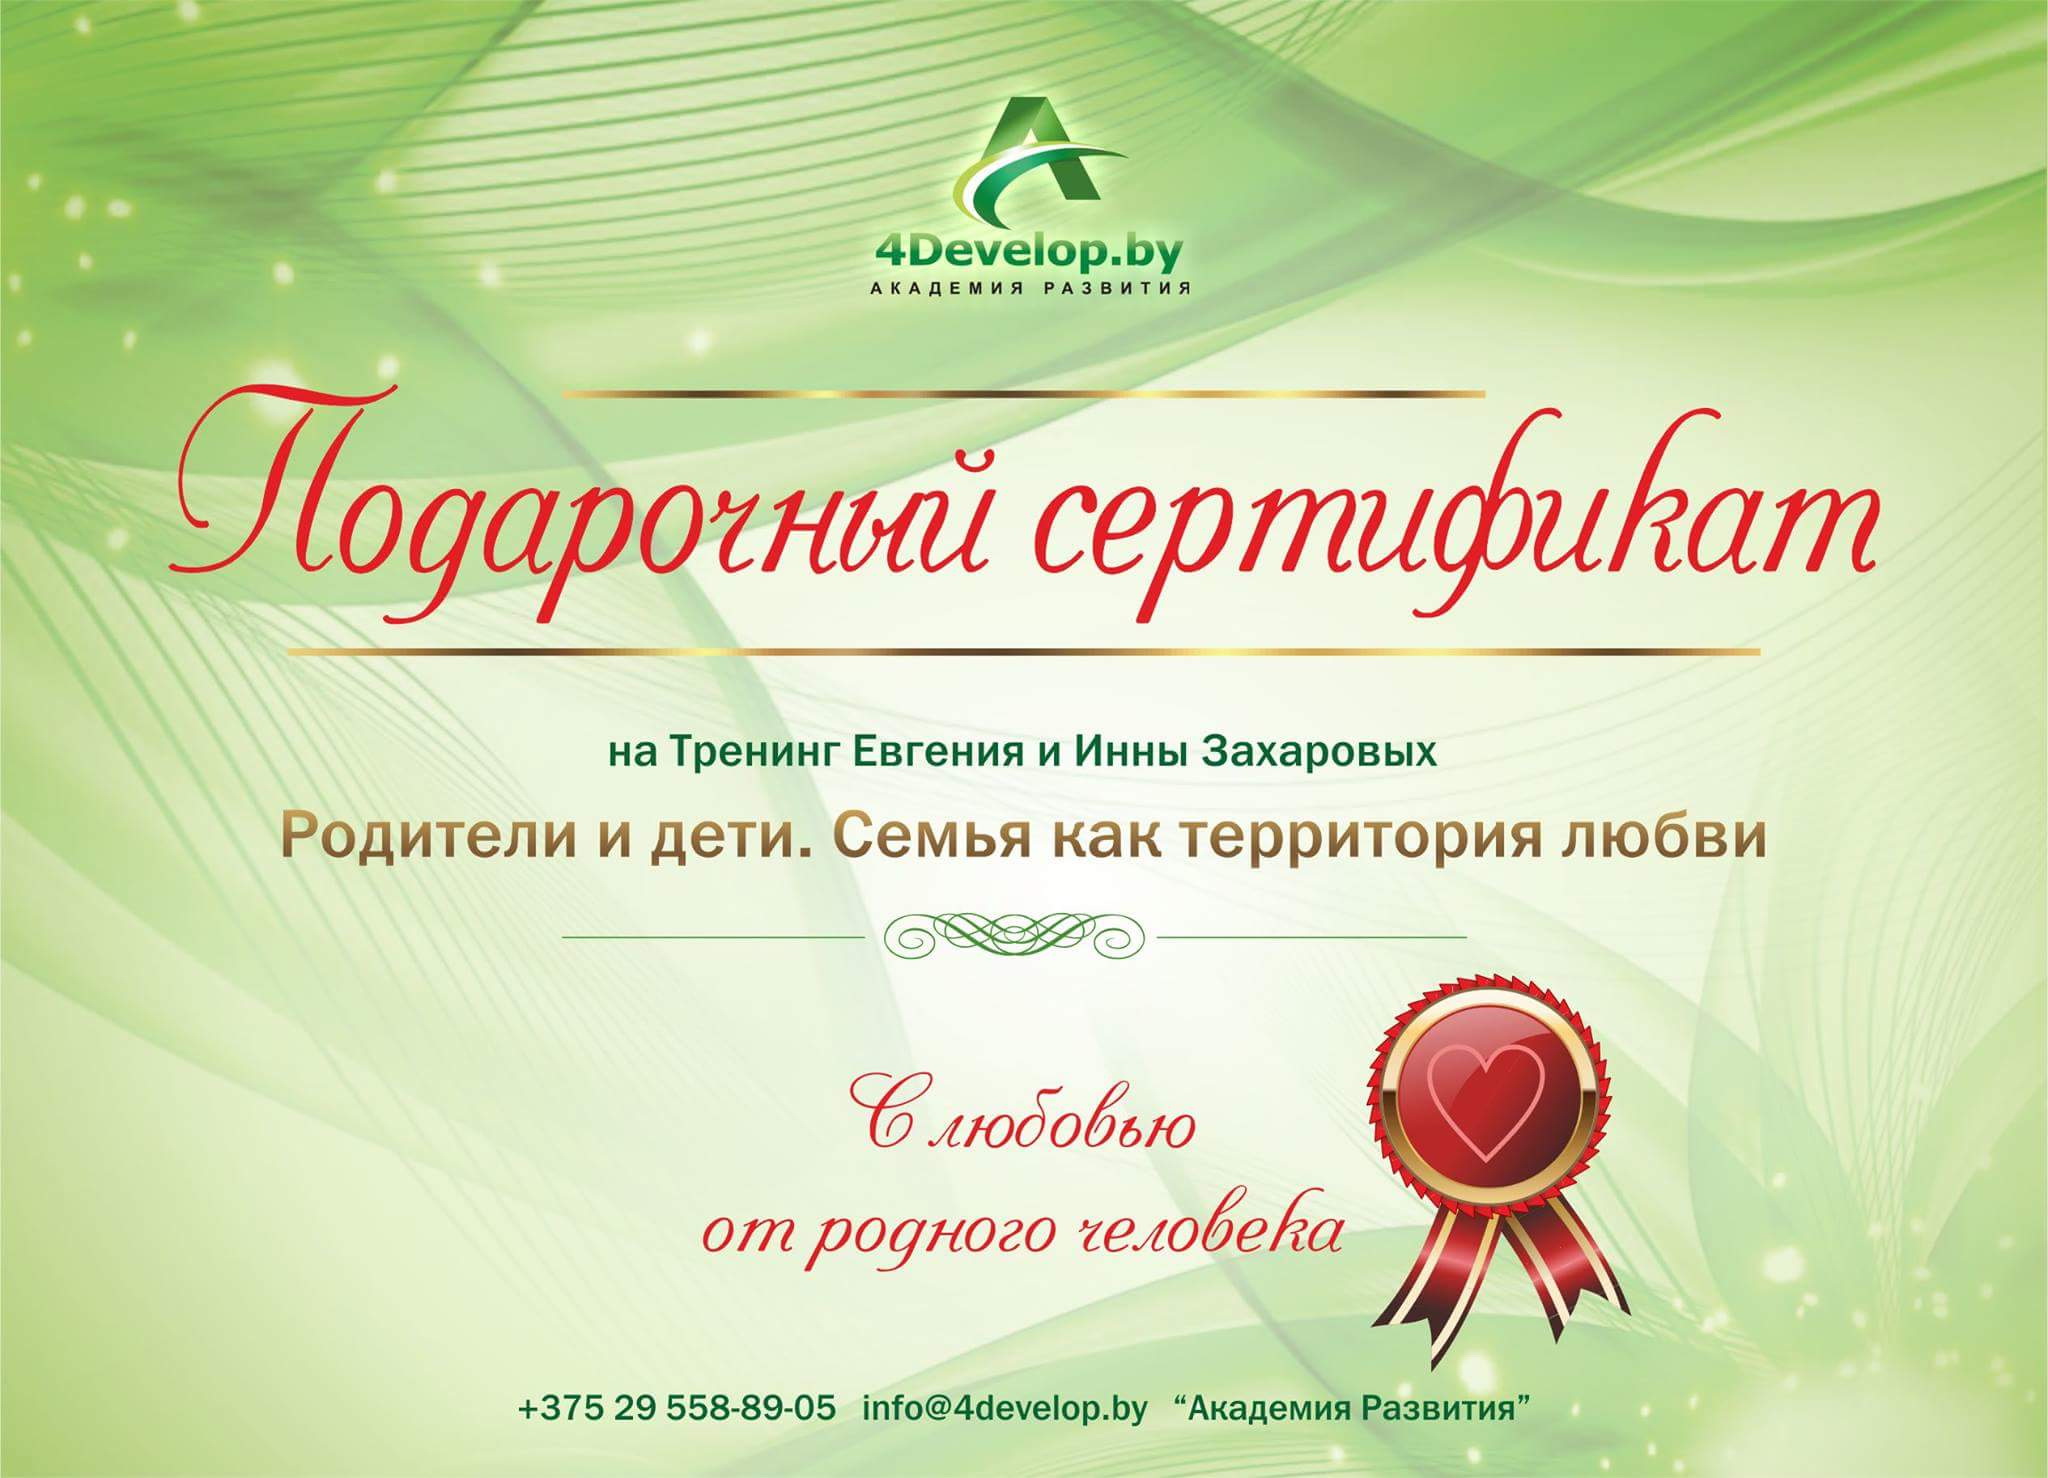 Подарочный сертификат от Академии Развития